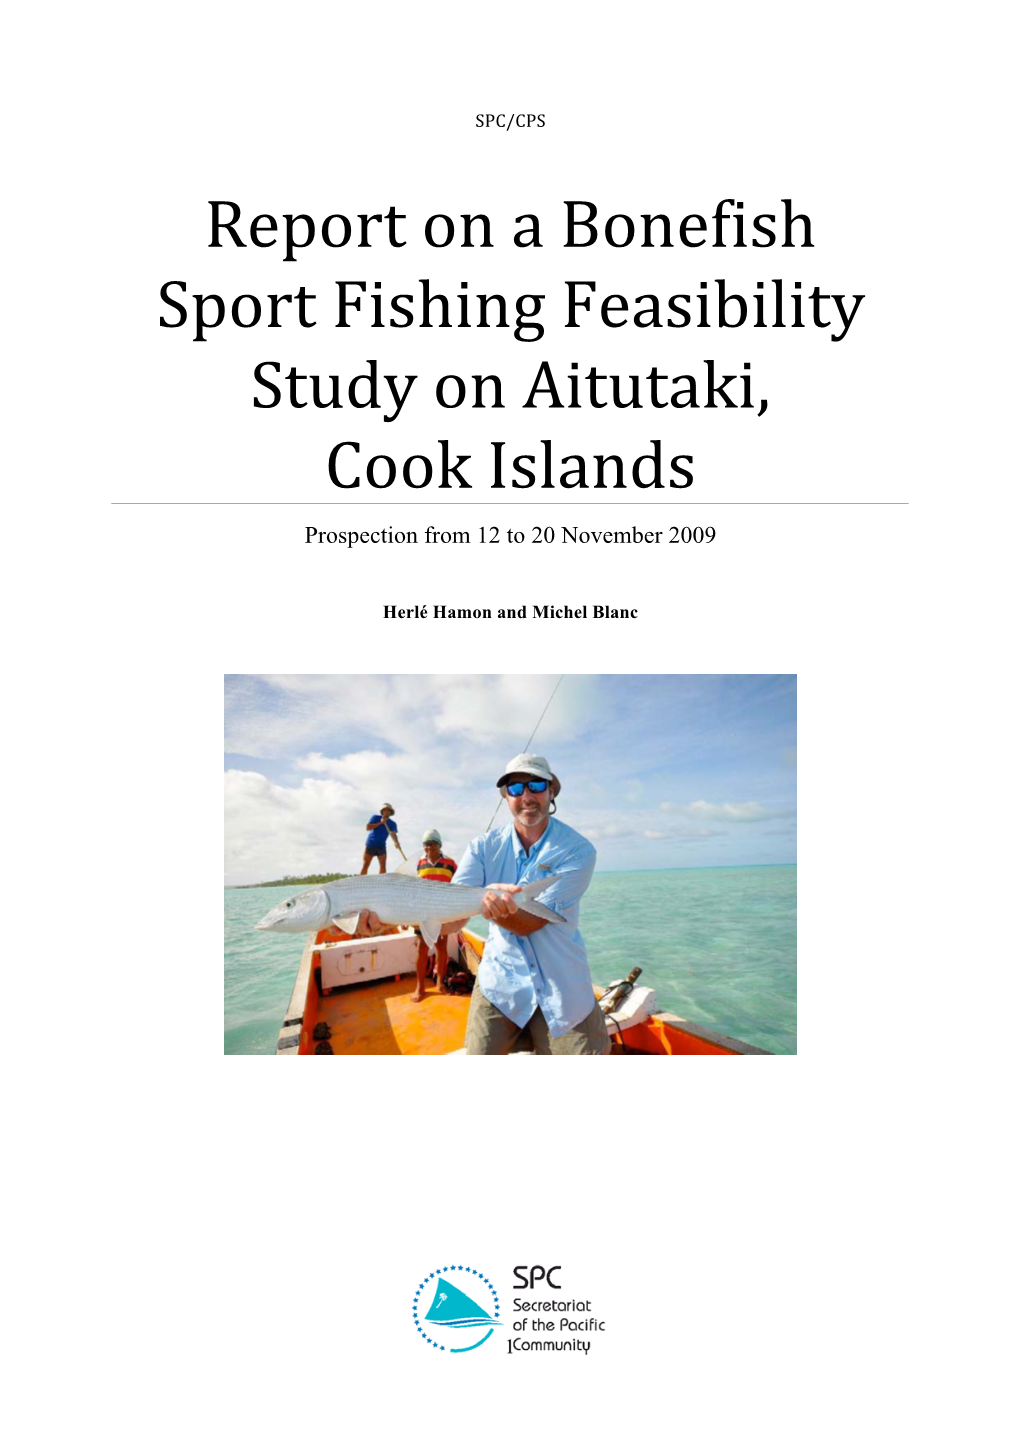 Report on Bonefish Flyfishing Feasibility Study on Aitutaki, Cook Islands